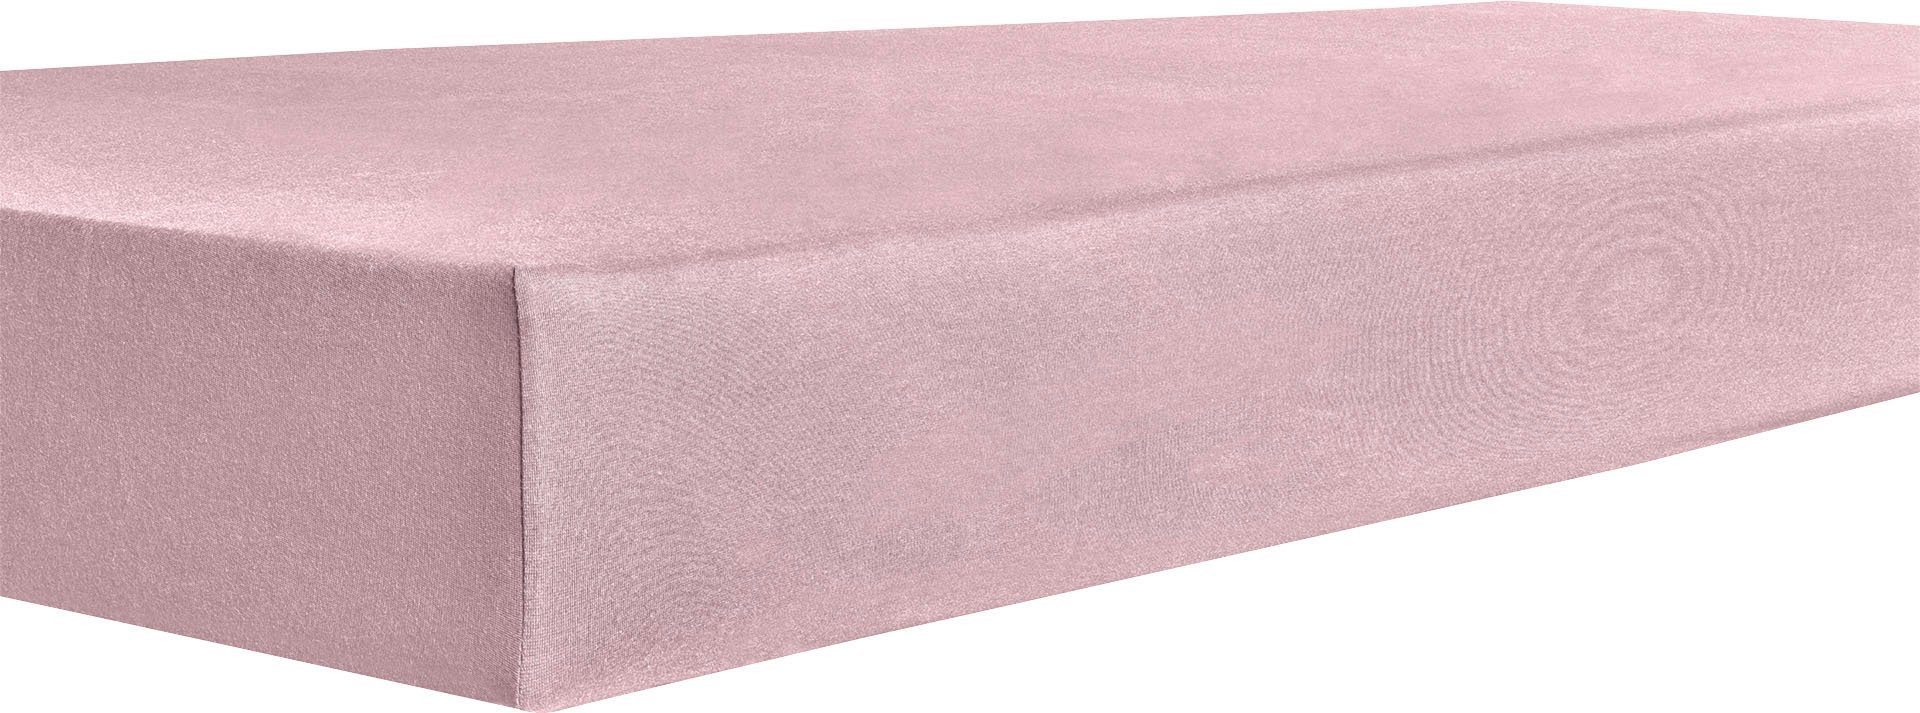 kneer hoeslaken easy-stretch top 40 (1 stuk) roze